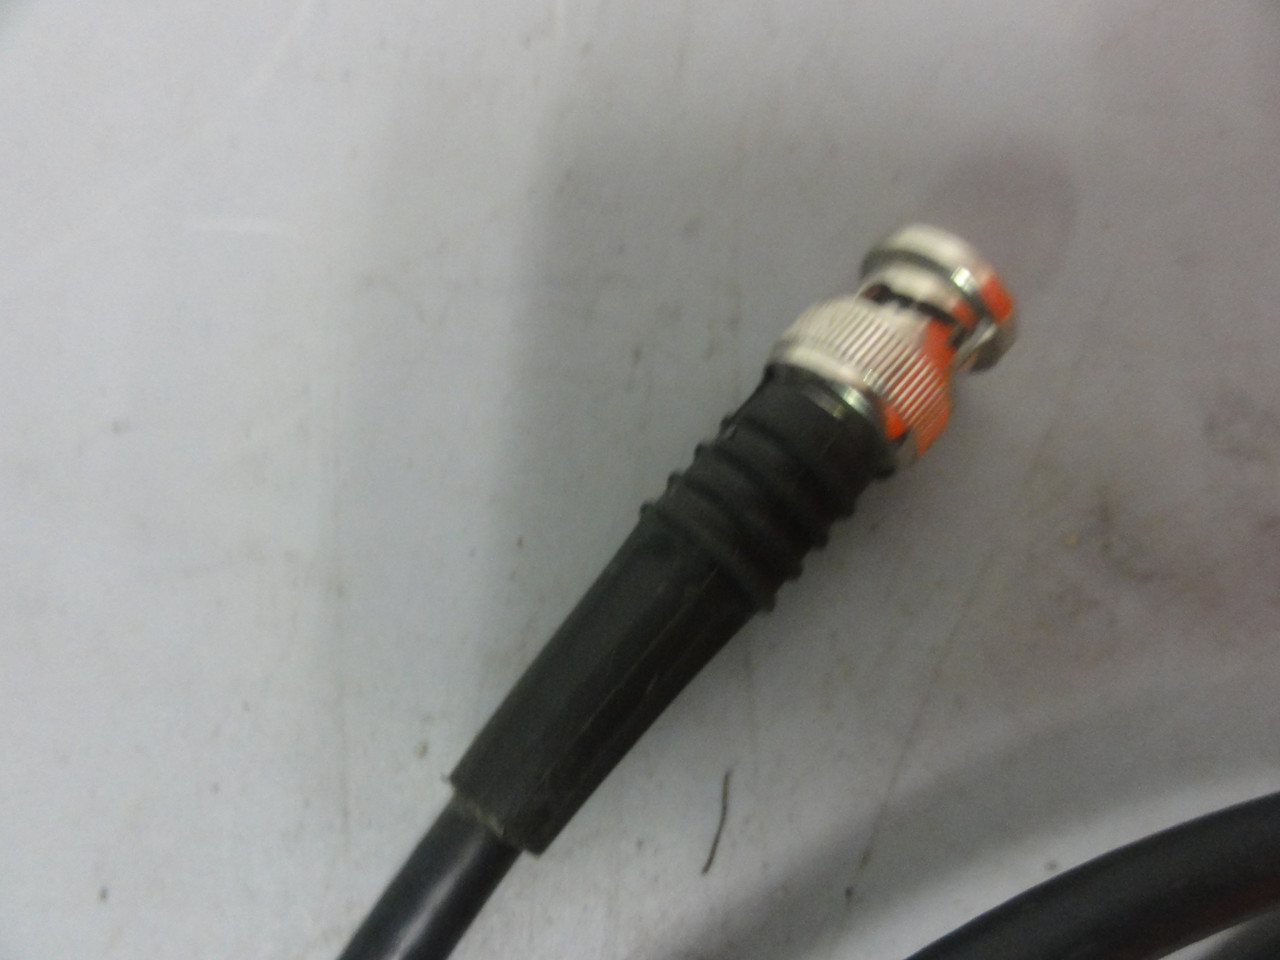 Greenpar Oscilloscope Probe Cable